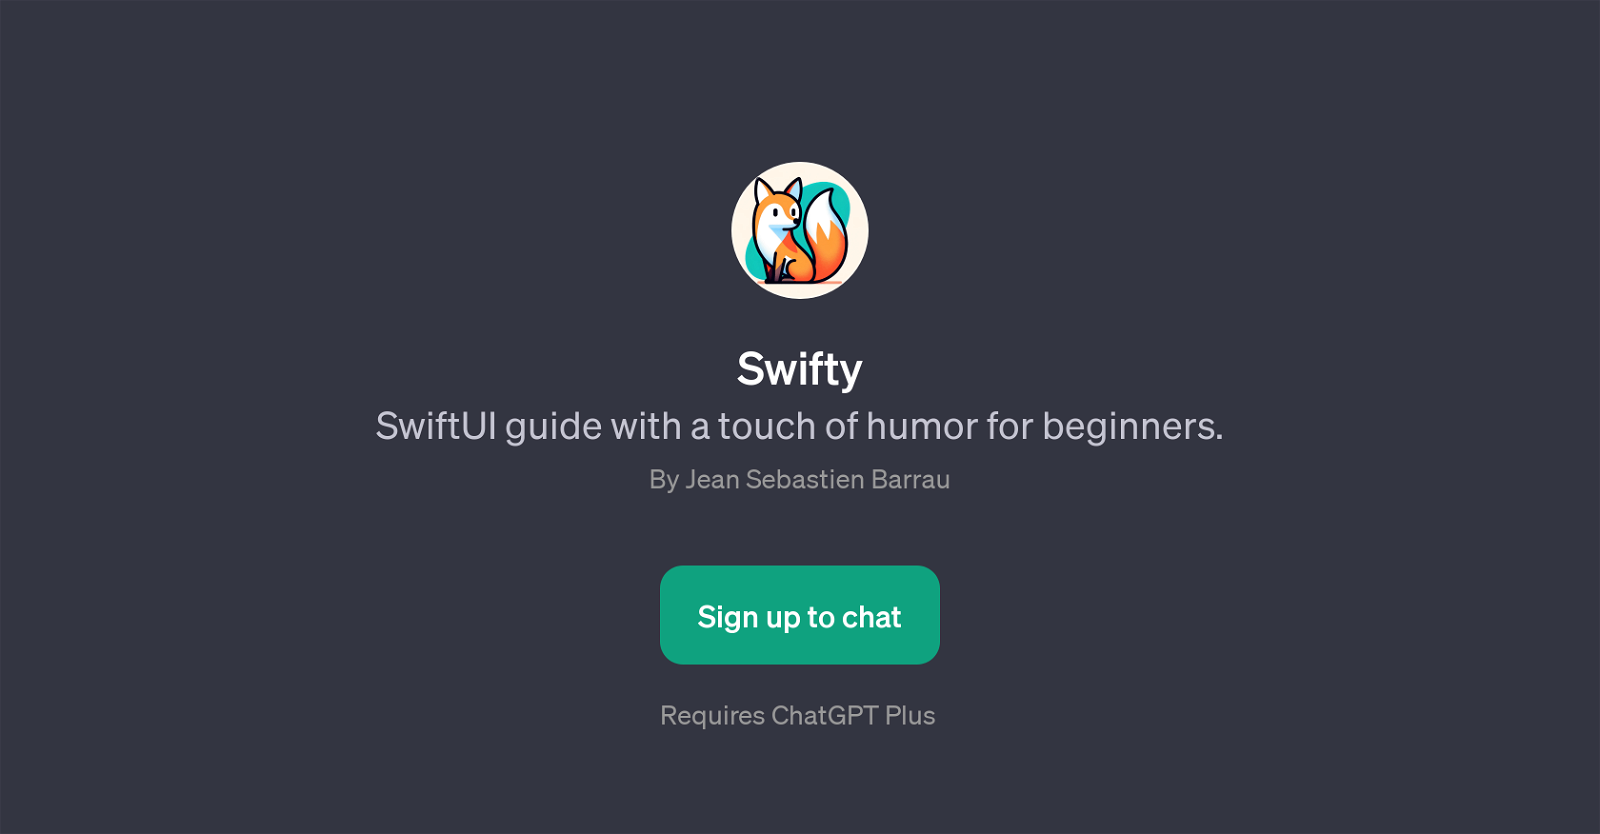 Swifty website